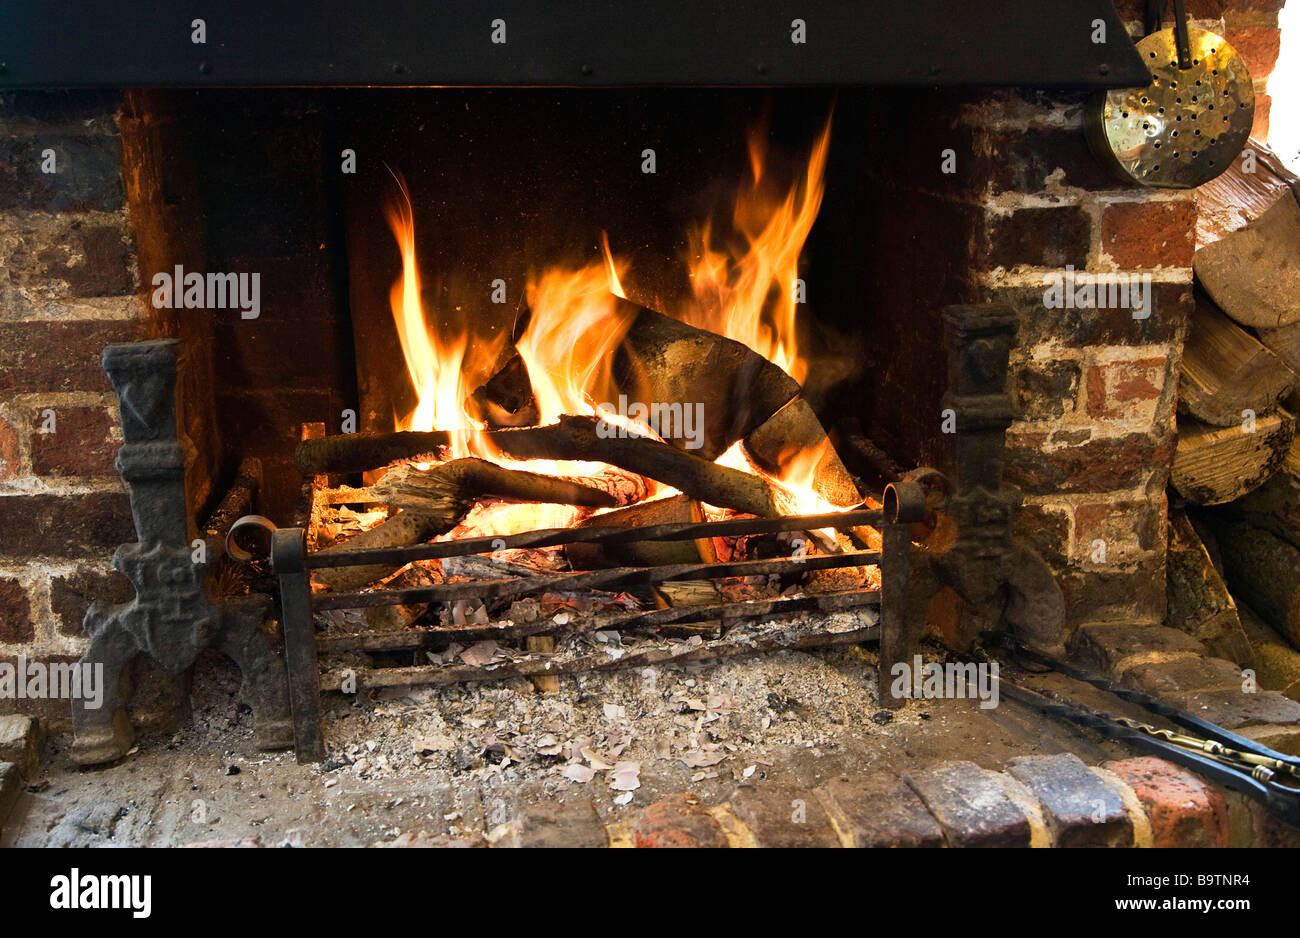 Ein Kaminfeuer brennt in ein Gitter Stockfotografie - Alamy